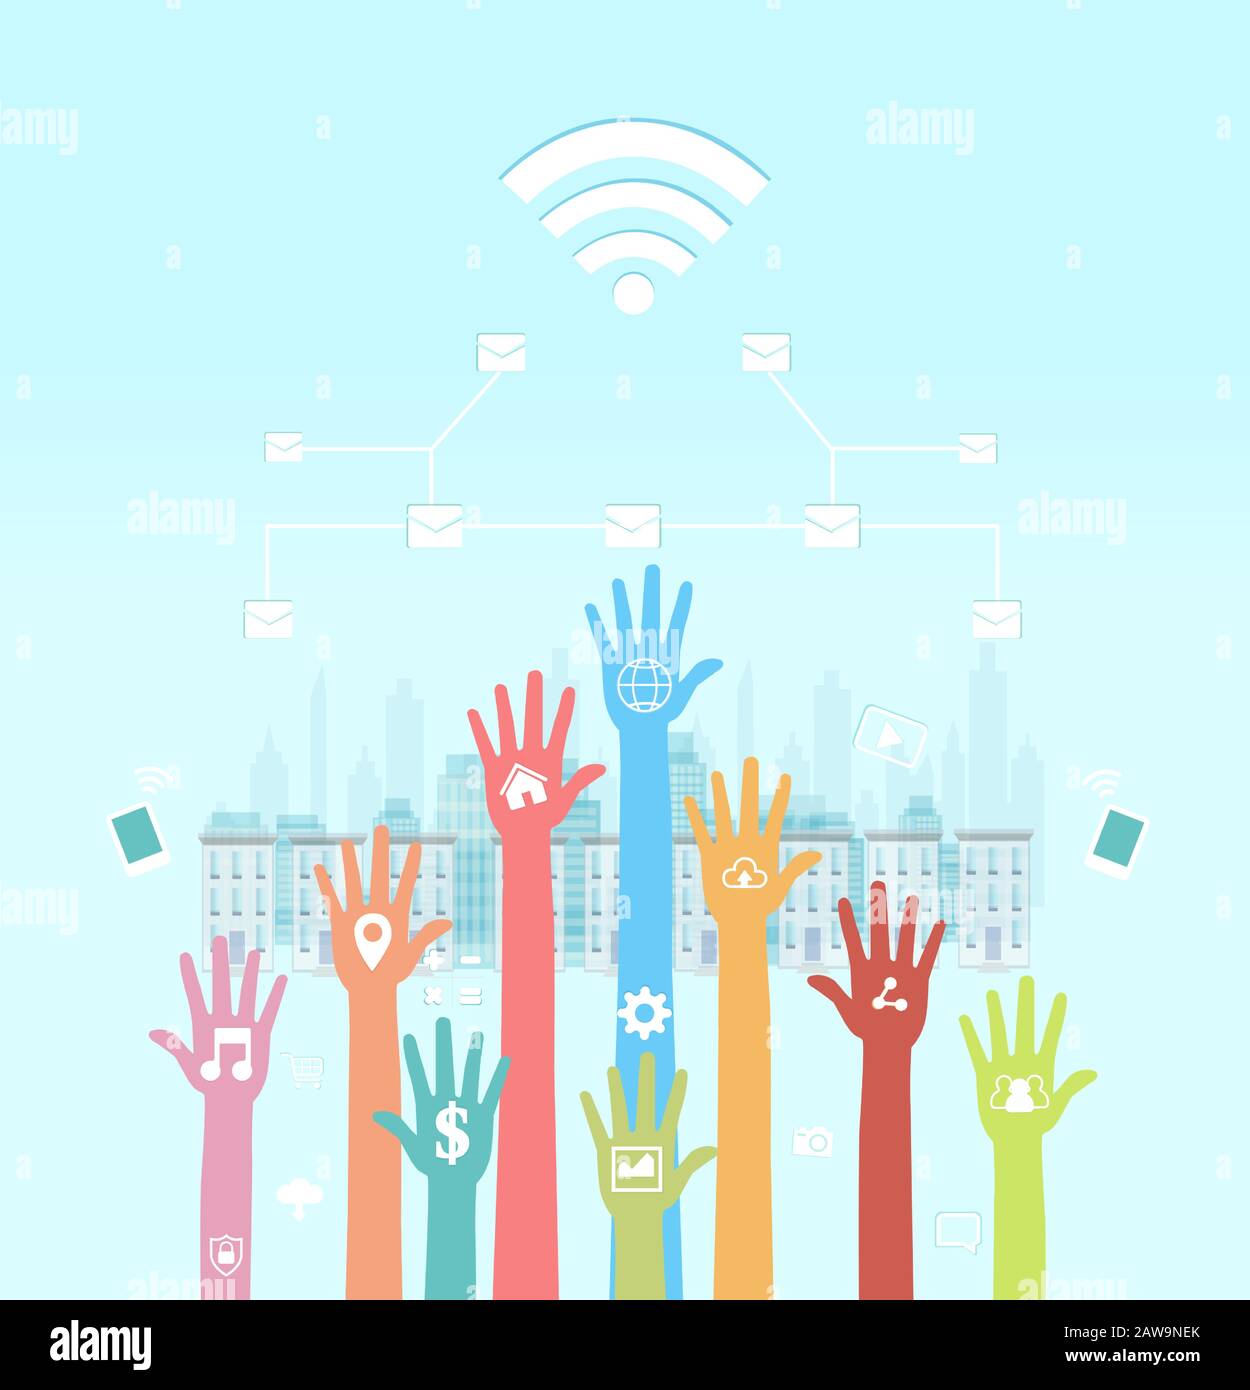 Globales Kommunikationskonzept. Vektor der menschlichen Hände mit Symbolen für soziale Medien, die mobile Geräte und Internet-Netzwerke verwenden Stock Vektor